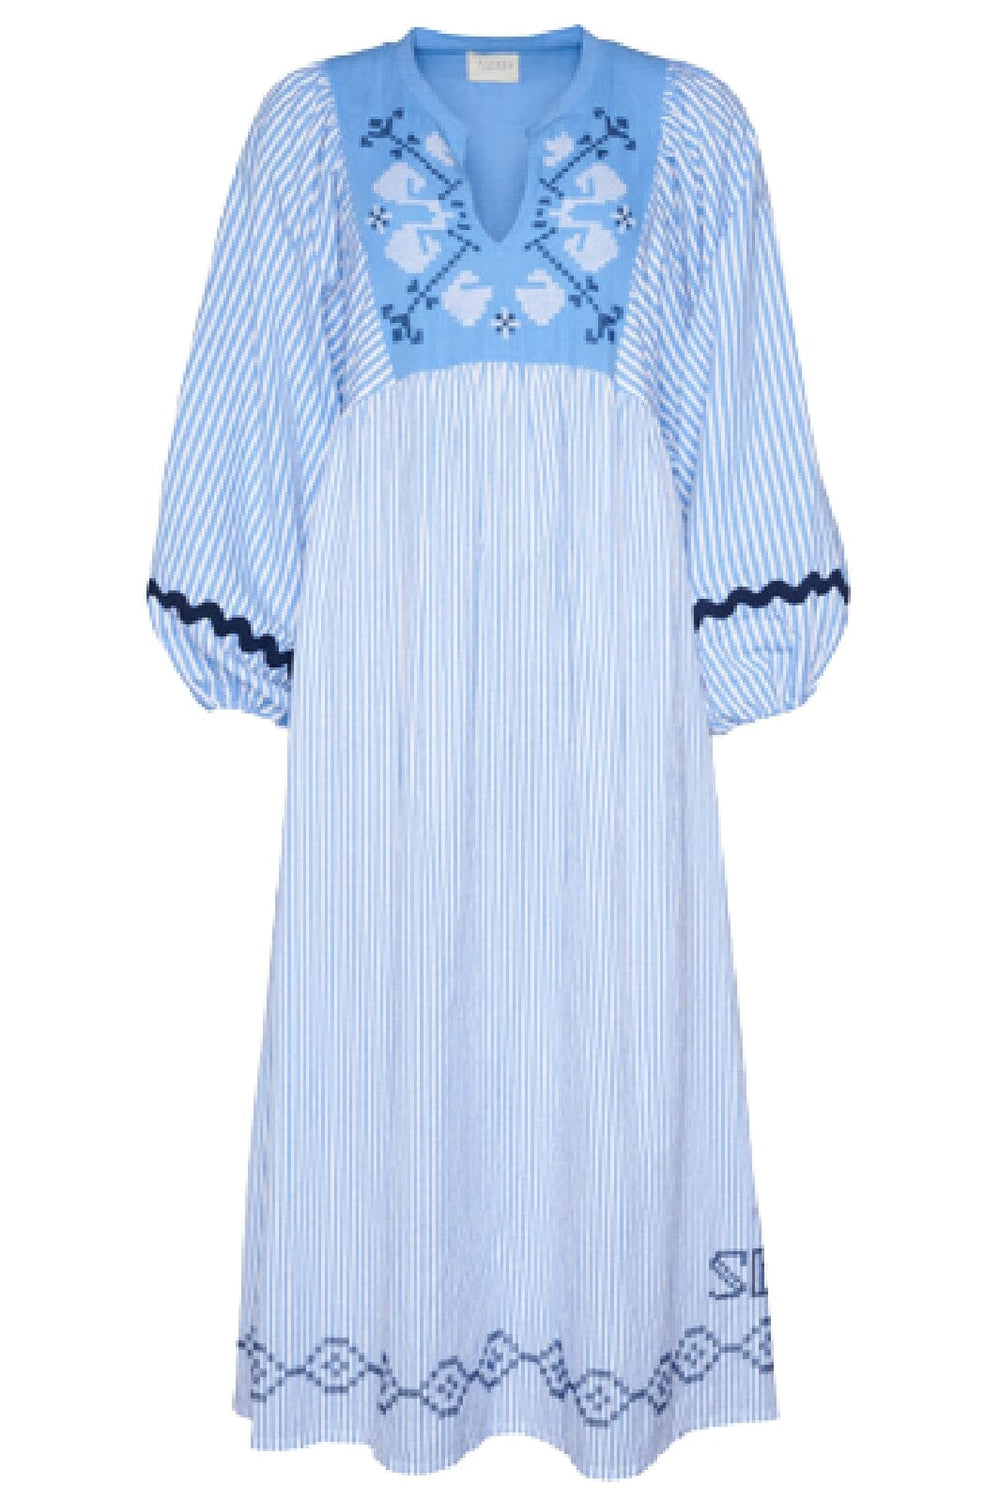 Sissel Edelbo - Beate Organic Linen-Cotton Dress - Blue White Kjoler 